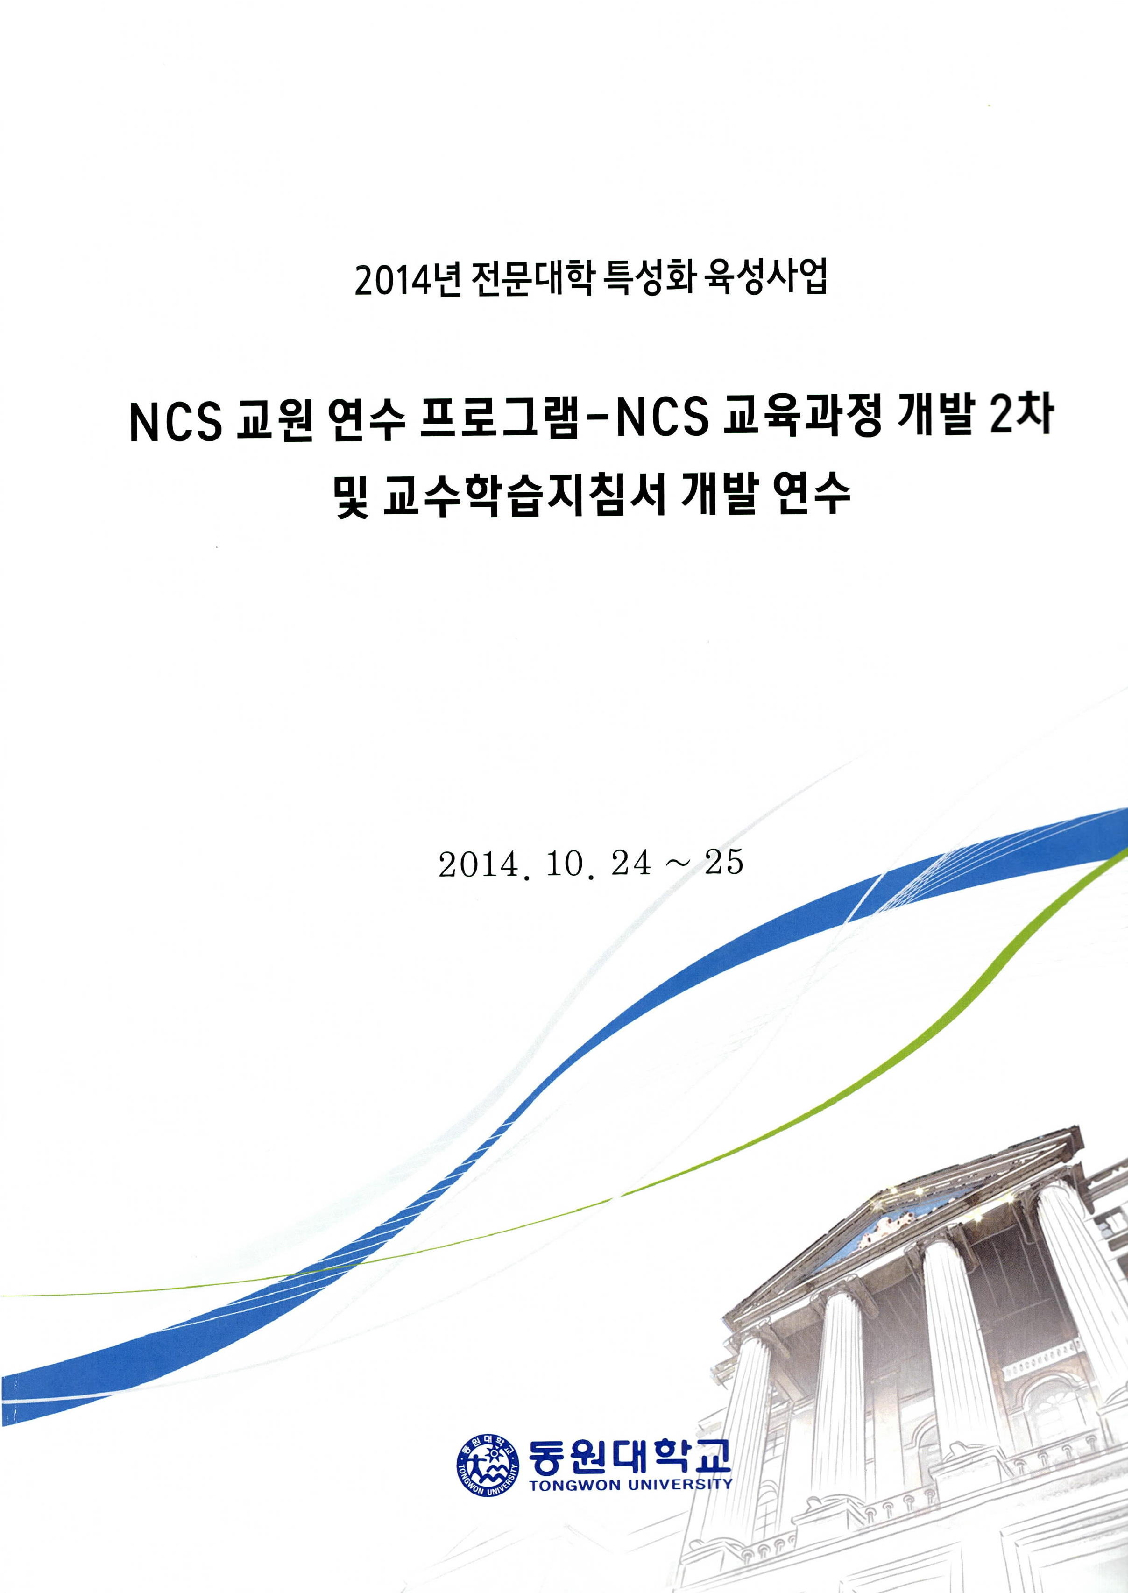 NCS교원연수프로그램-NCS교육과정개발2차 및 교수학습지침서 개발연수